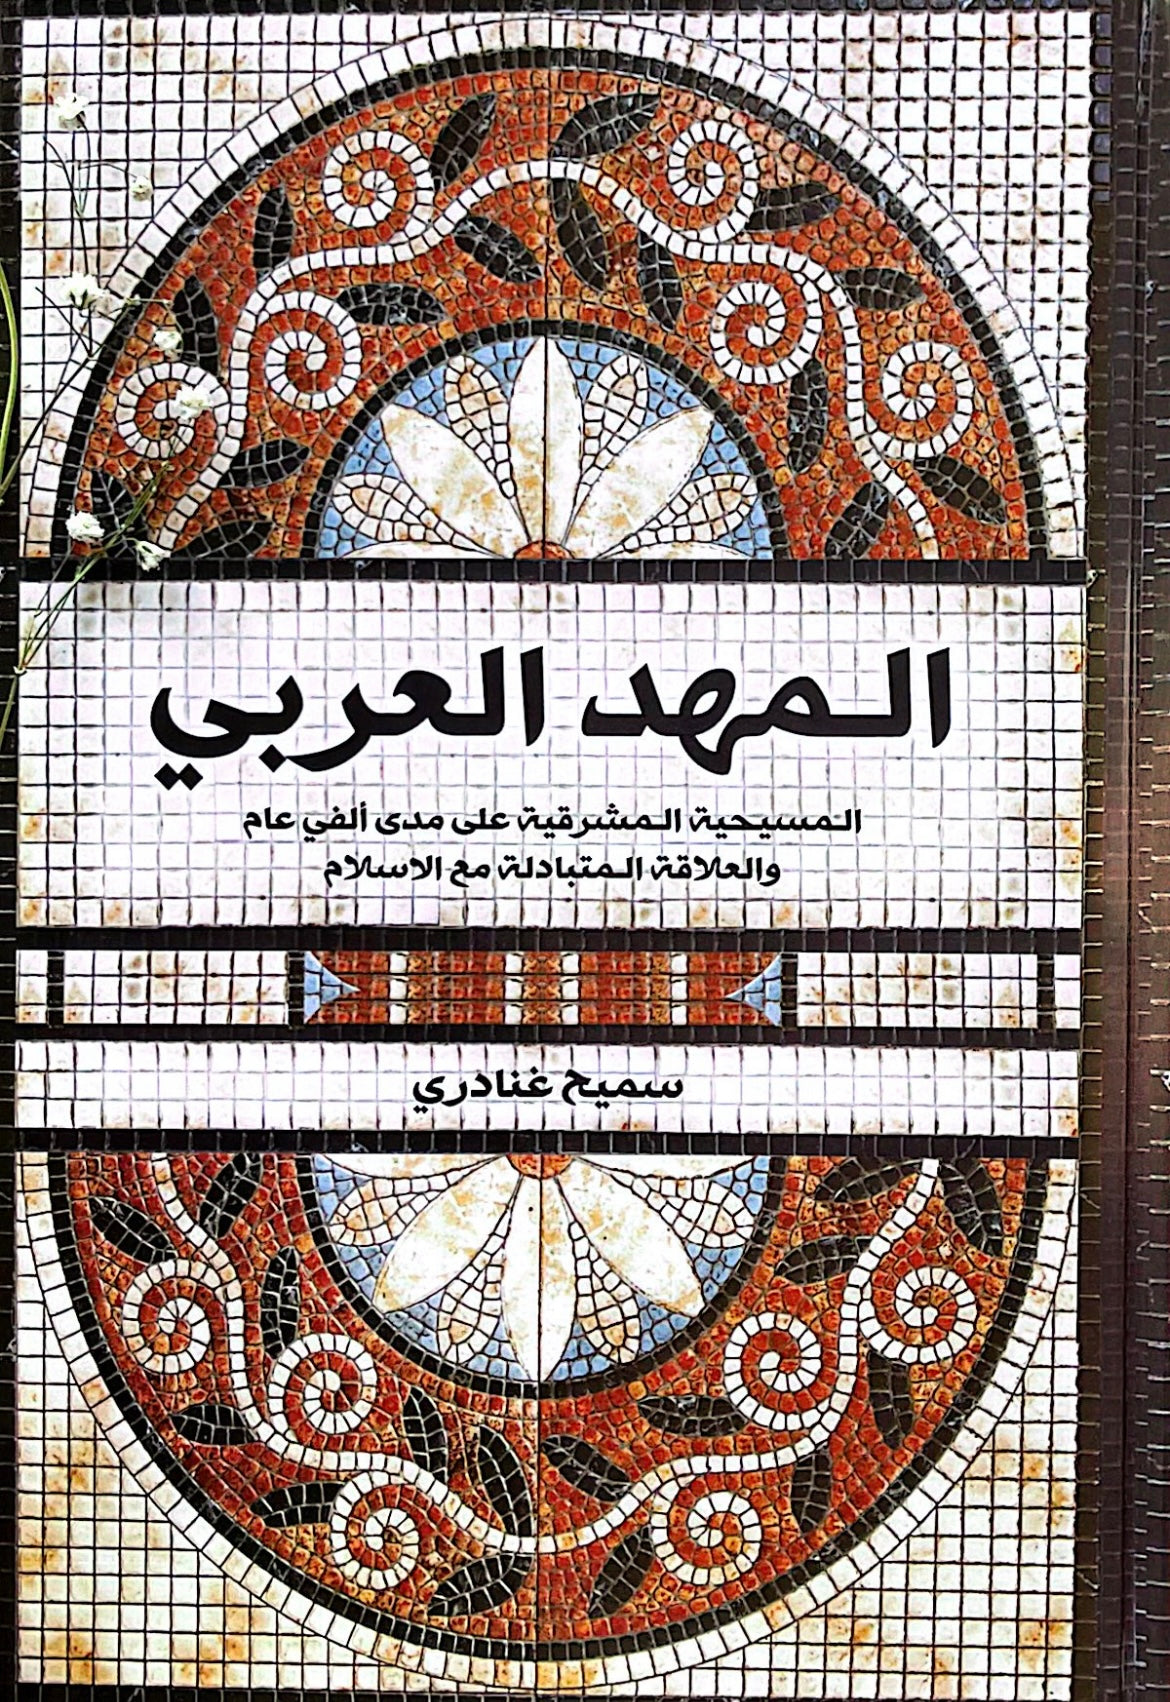 المهد العربي : المسيحية المشرقية على مدى ألفي عام والعلاقة المتبادلة مع الاسلام